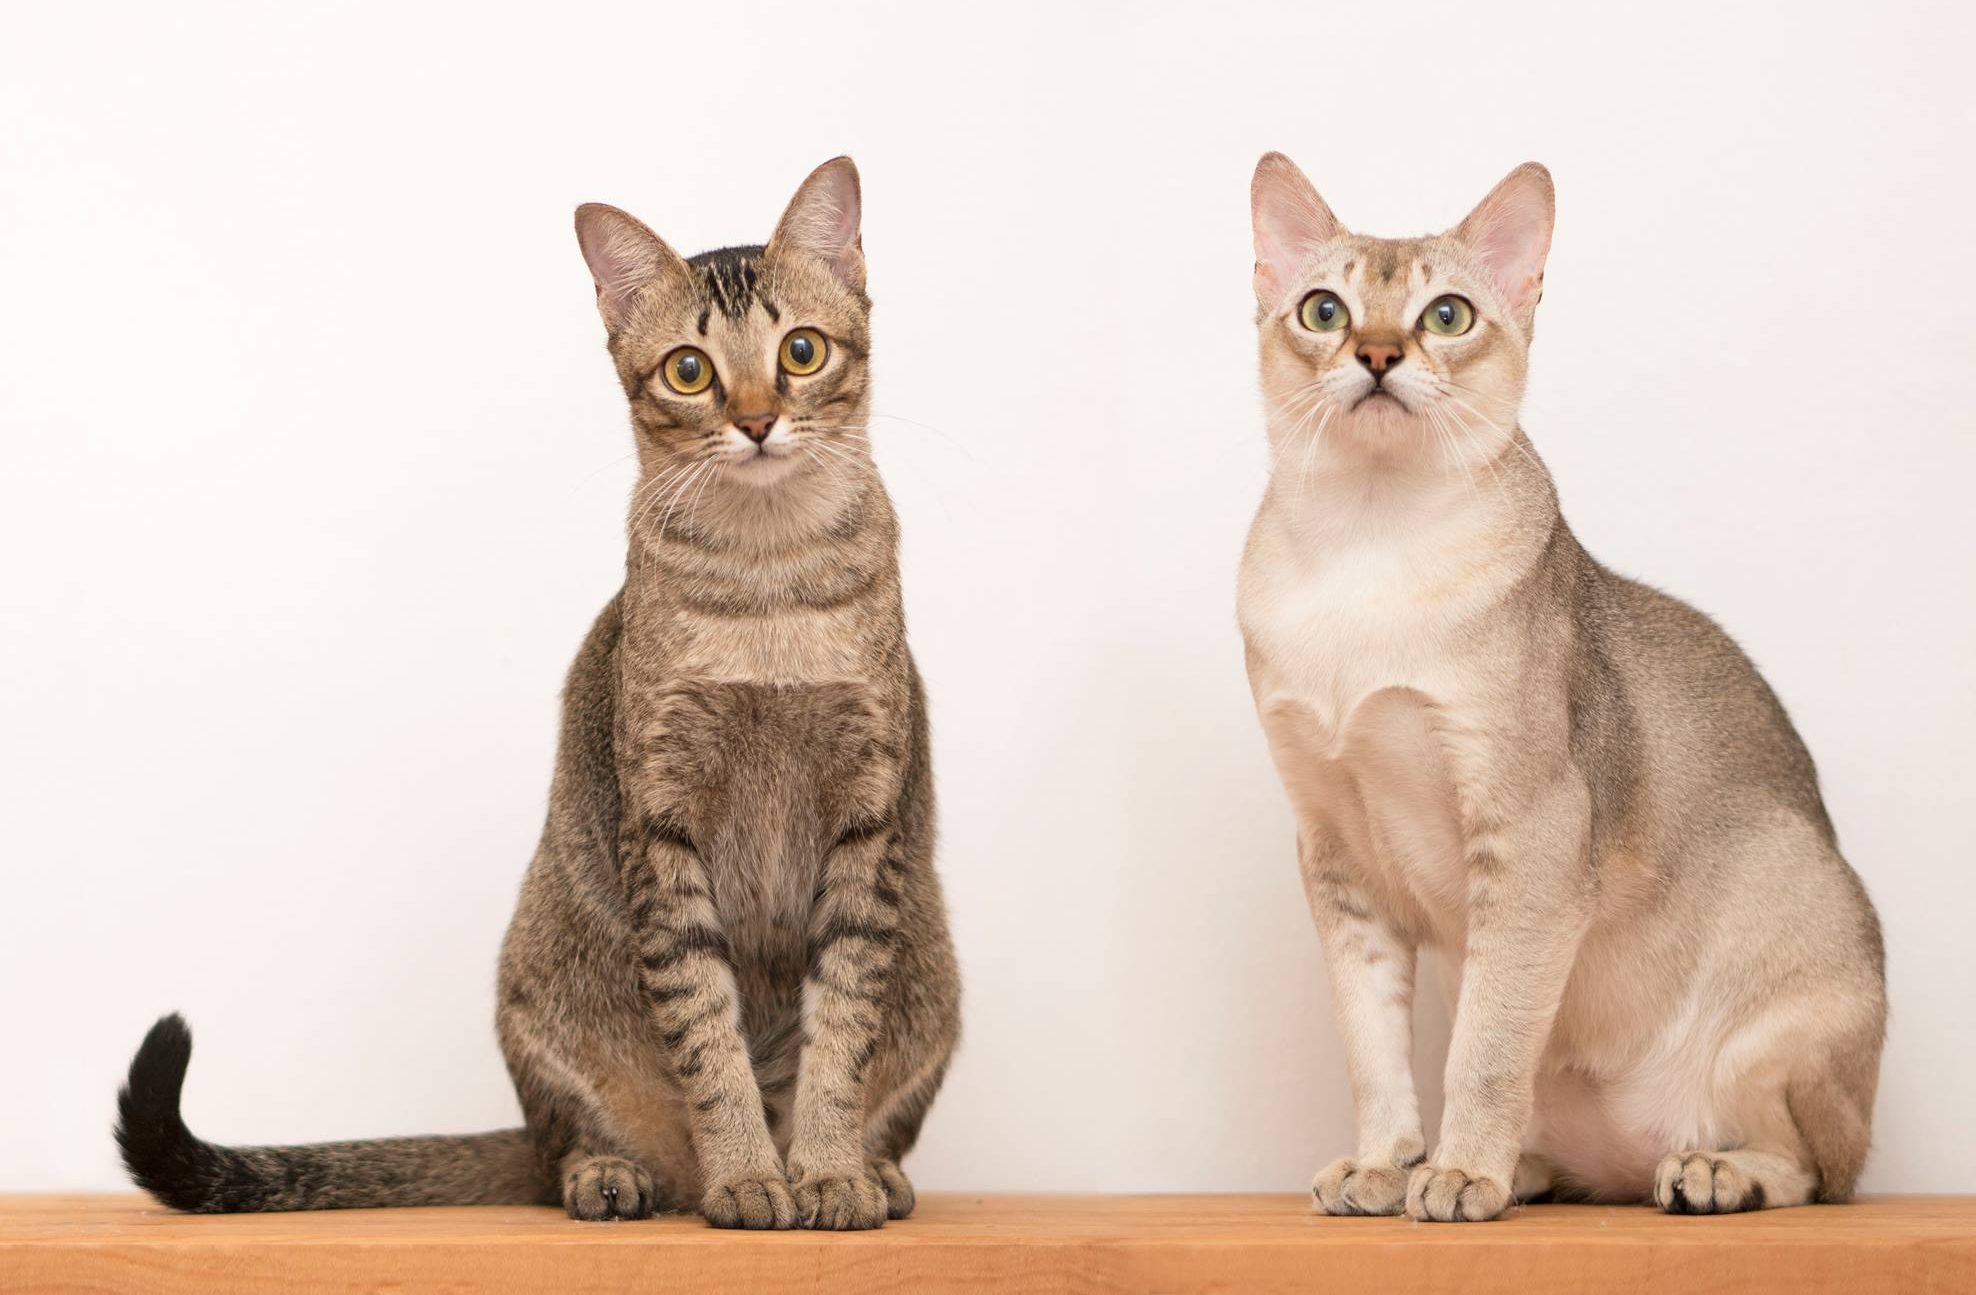 Teacup cat breeds Singapura Cats